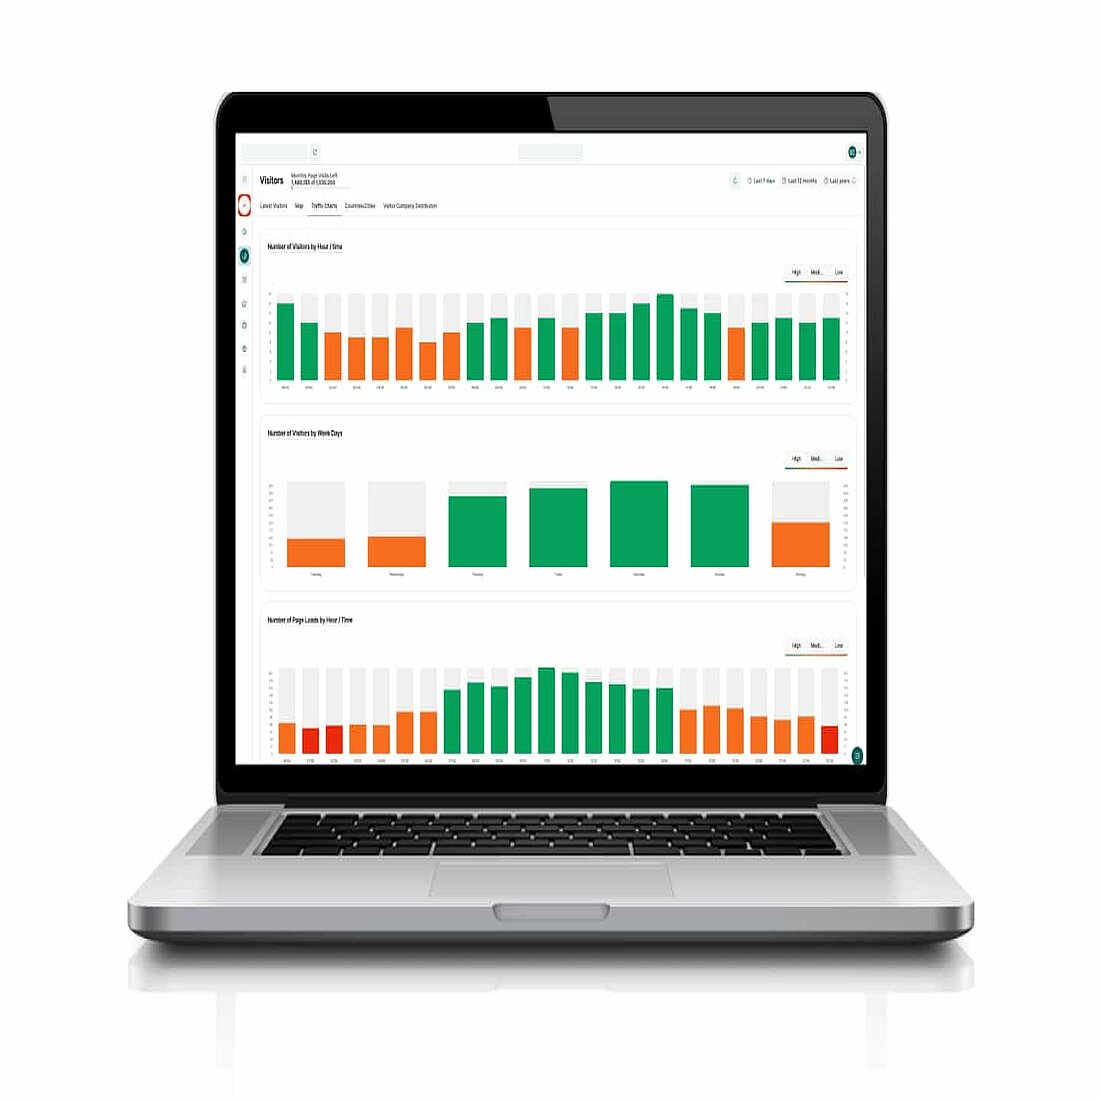 Dashboard des Wordpress-Analyse-Plugins "Visitor Analytics